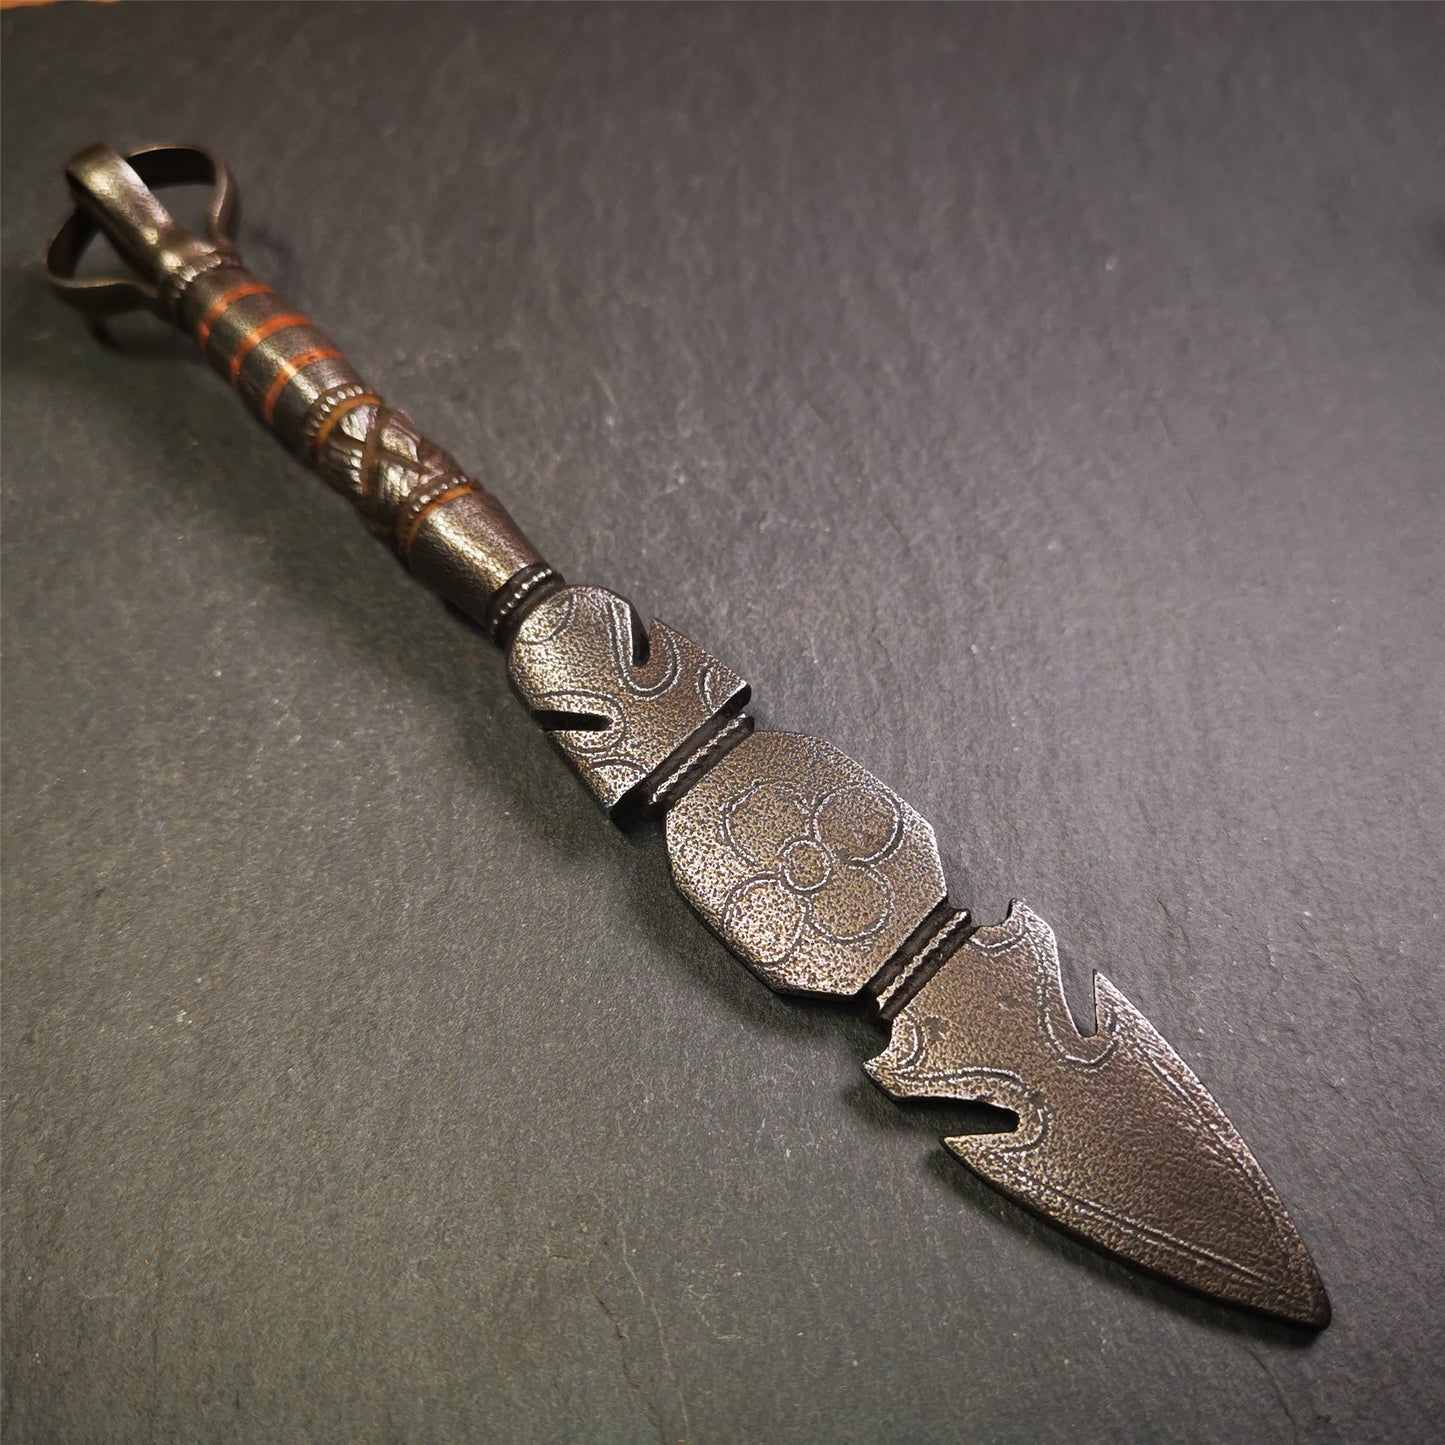 Manjusri Sword